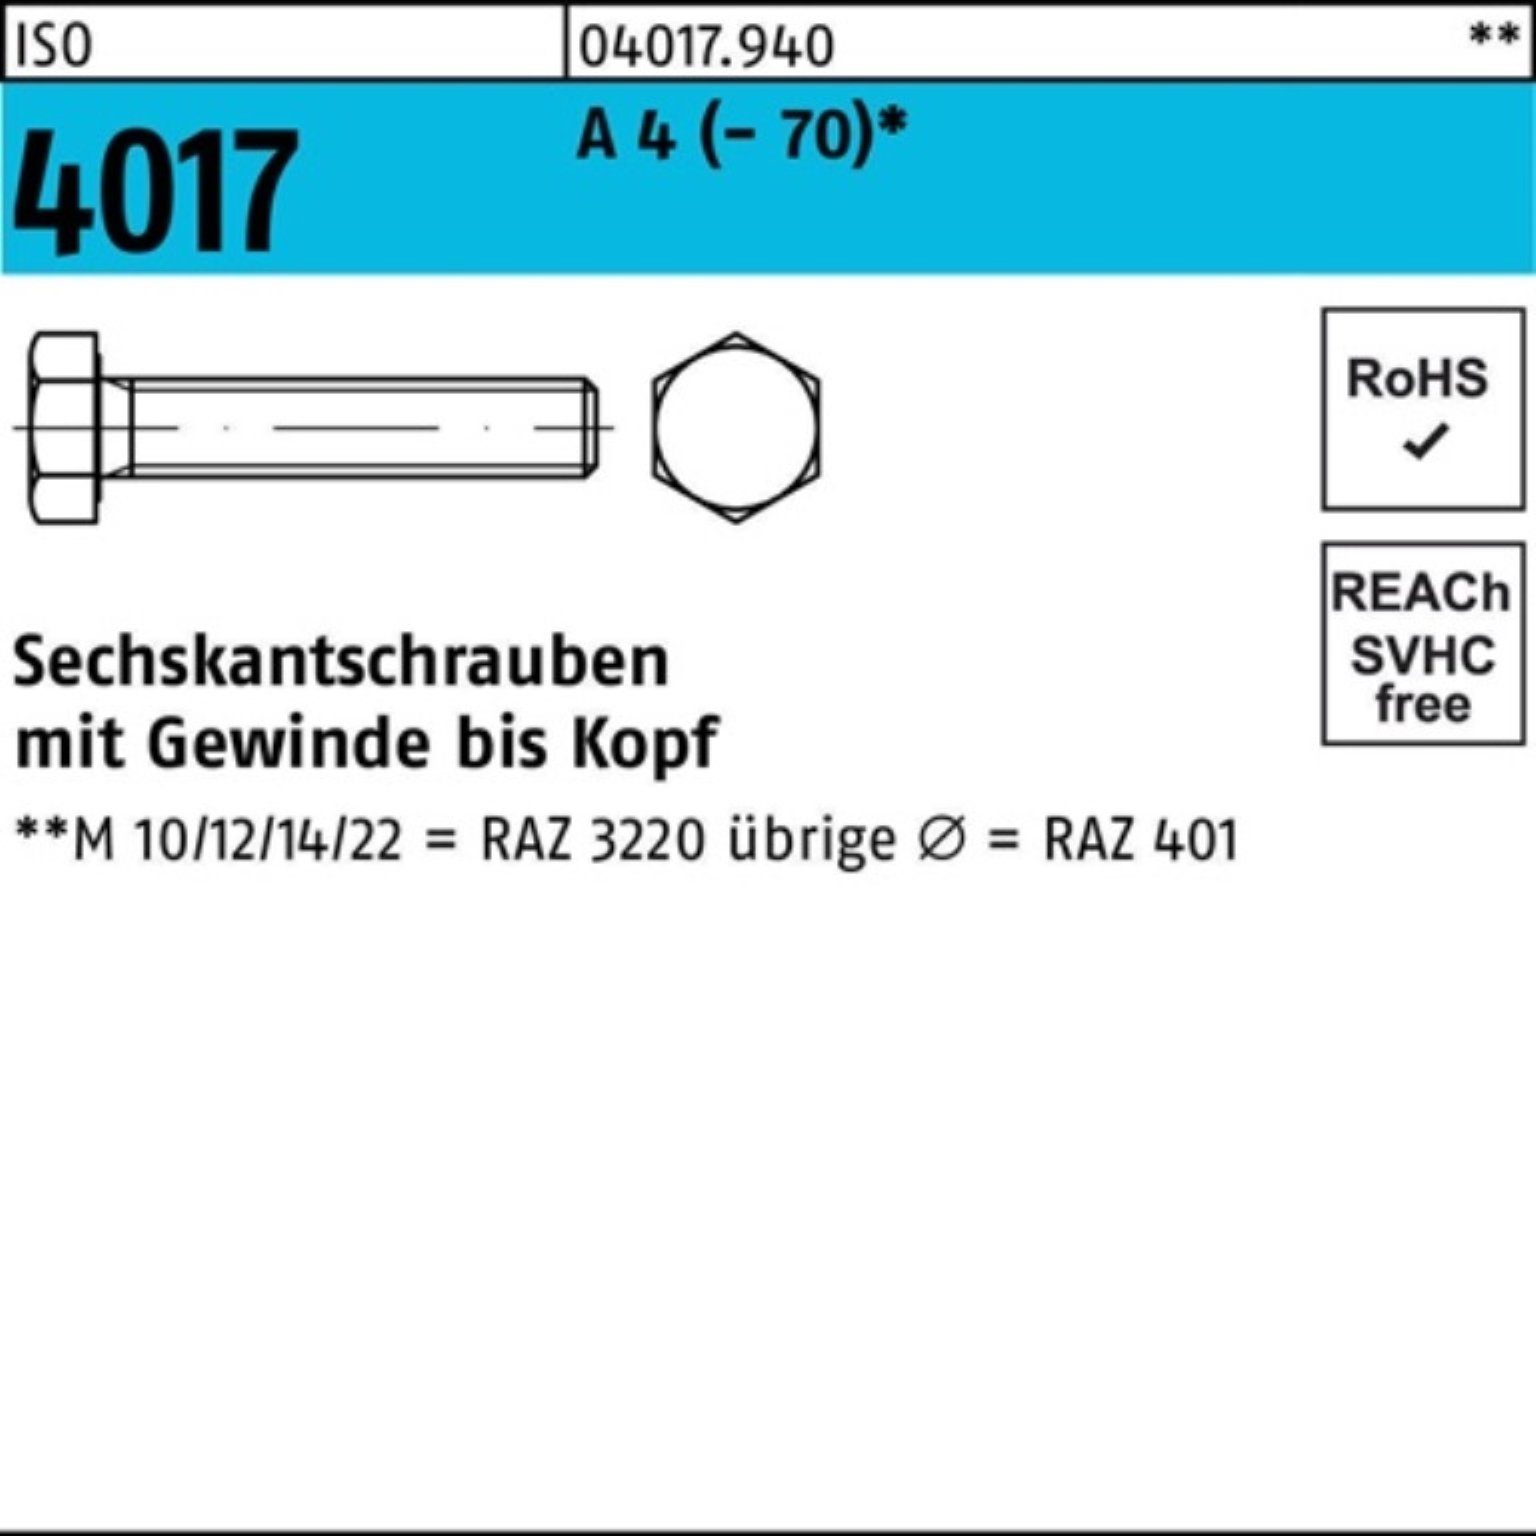 Bufab Sechskantschraube 100er Pack Sechskantschraube ISO 4017 VG M24x 50 A 4 (70) 1 Stück I